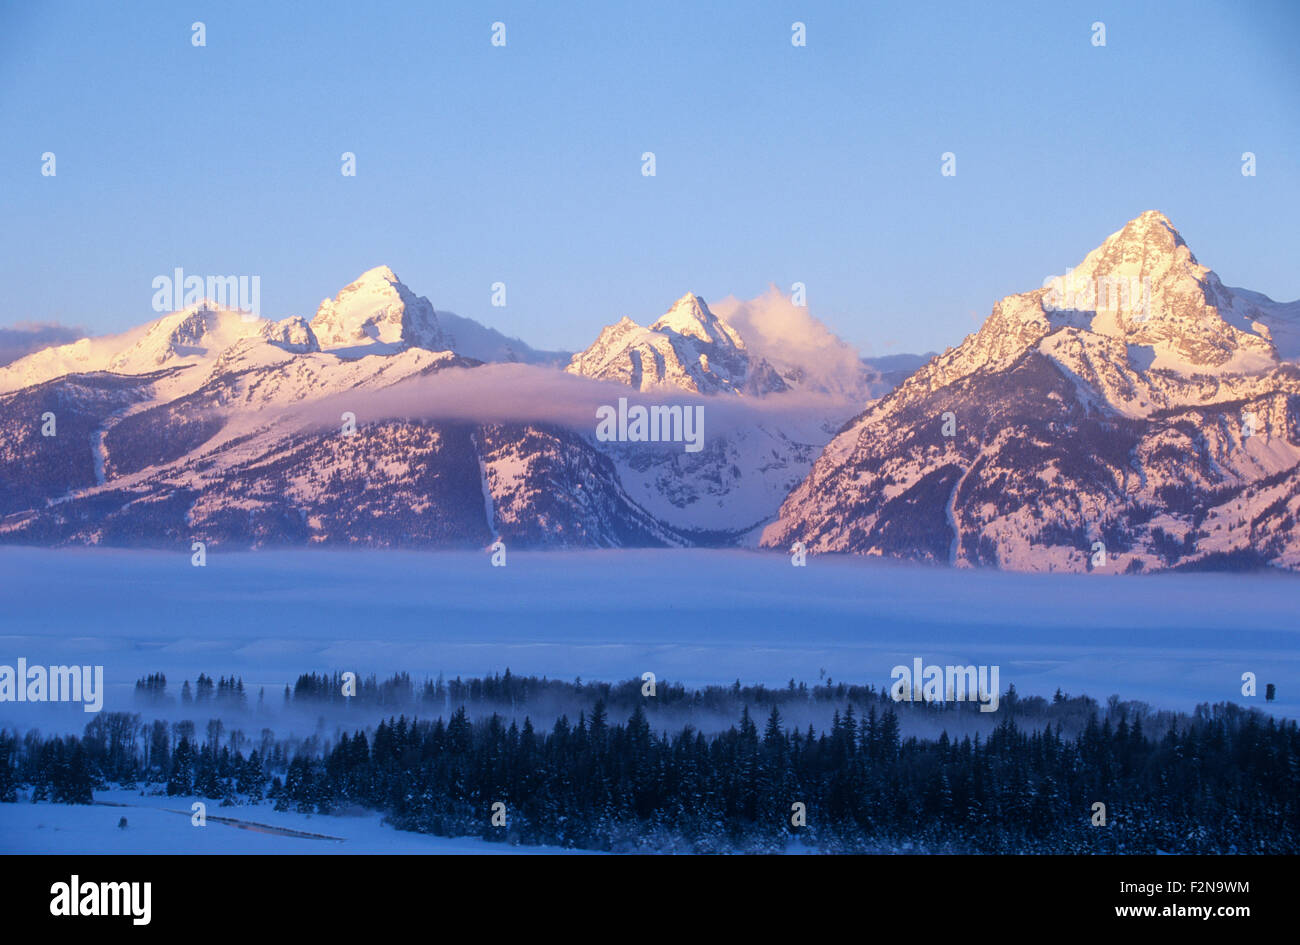 The Teton mountain range at dawn in winter, Grand Teton National Park, Wyoming, USA. Stock Photo